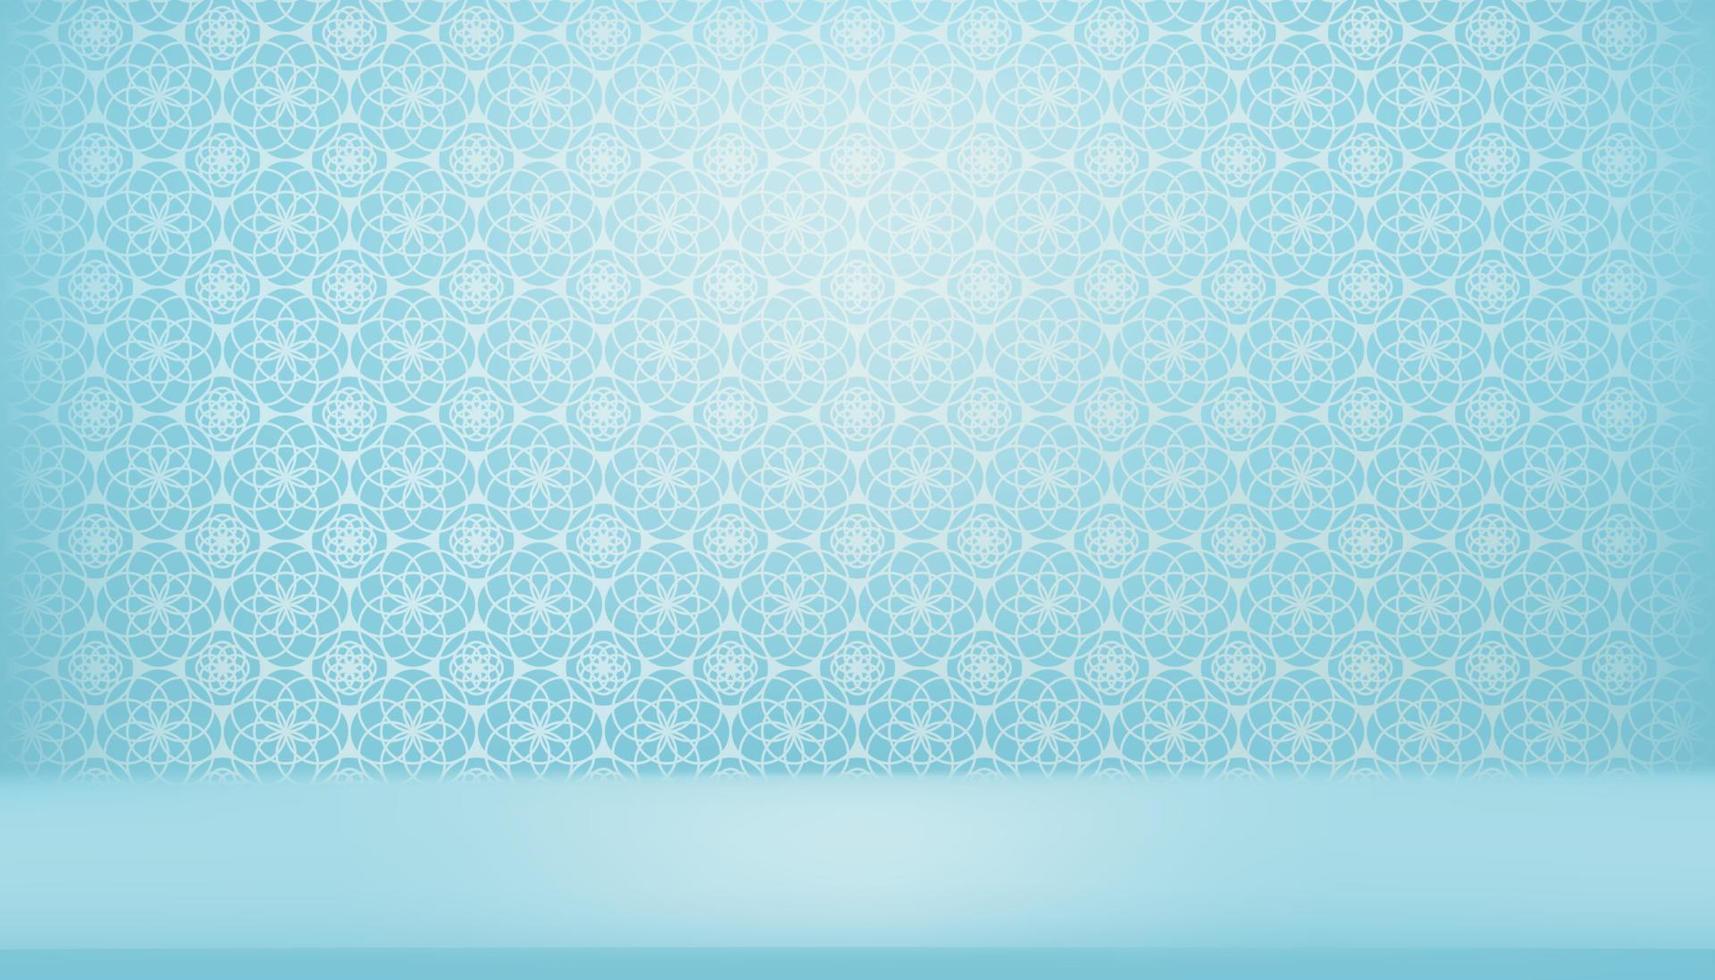 Ramadan Kareem-Hintergrund, 3D-Studioanzeige, islamisches Ornament, arabisches Muster auf blauem Hintergrund, arabisches traditionelles Motiv der Vektortextur, muslimische Religion symbolisch für eid al fitr, eid al adha, eid mubarak vektor